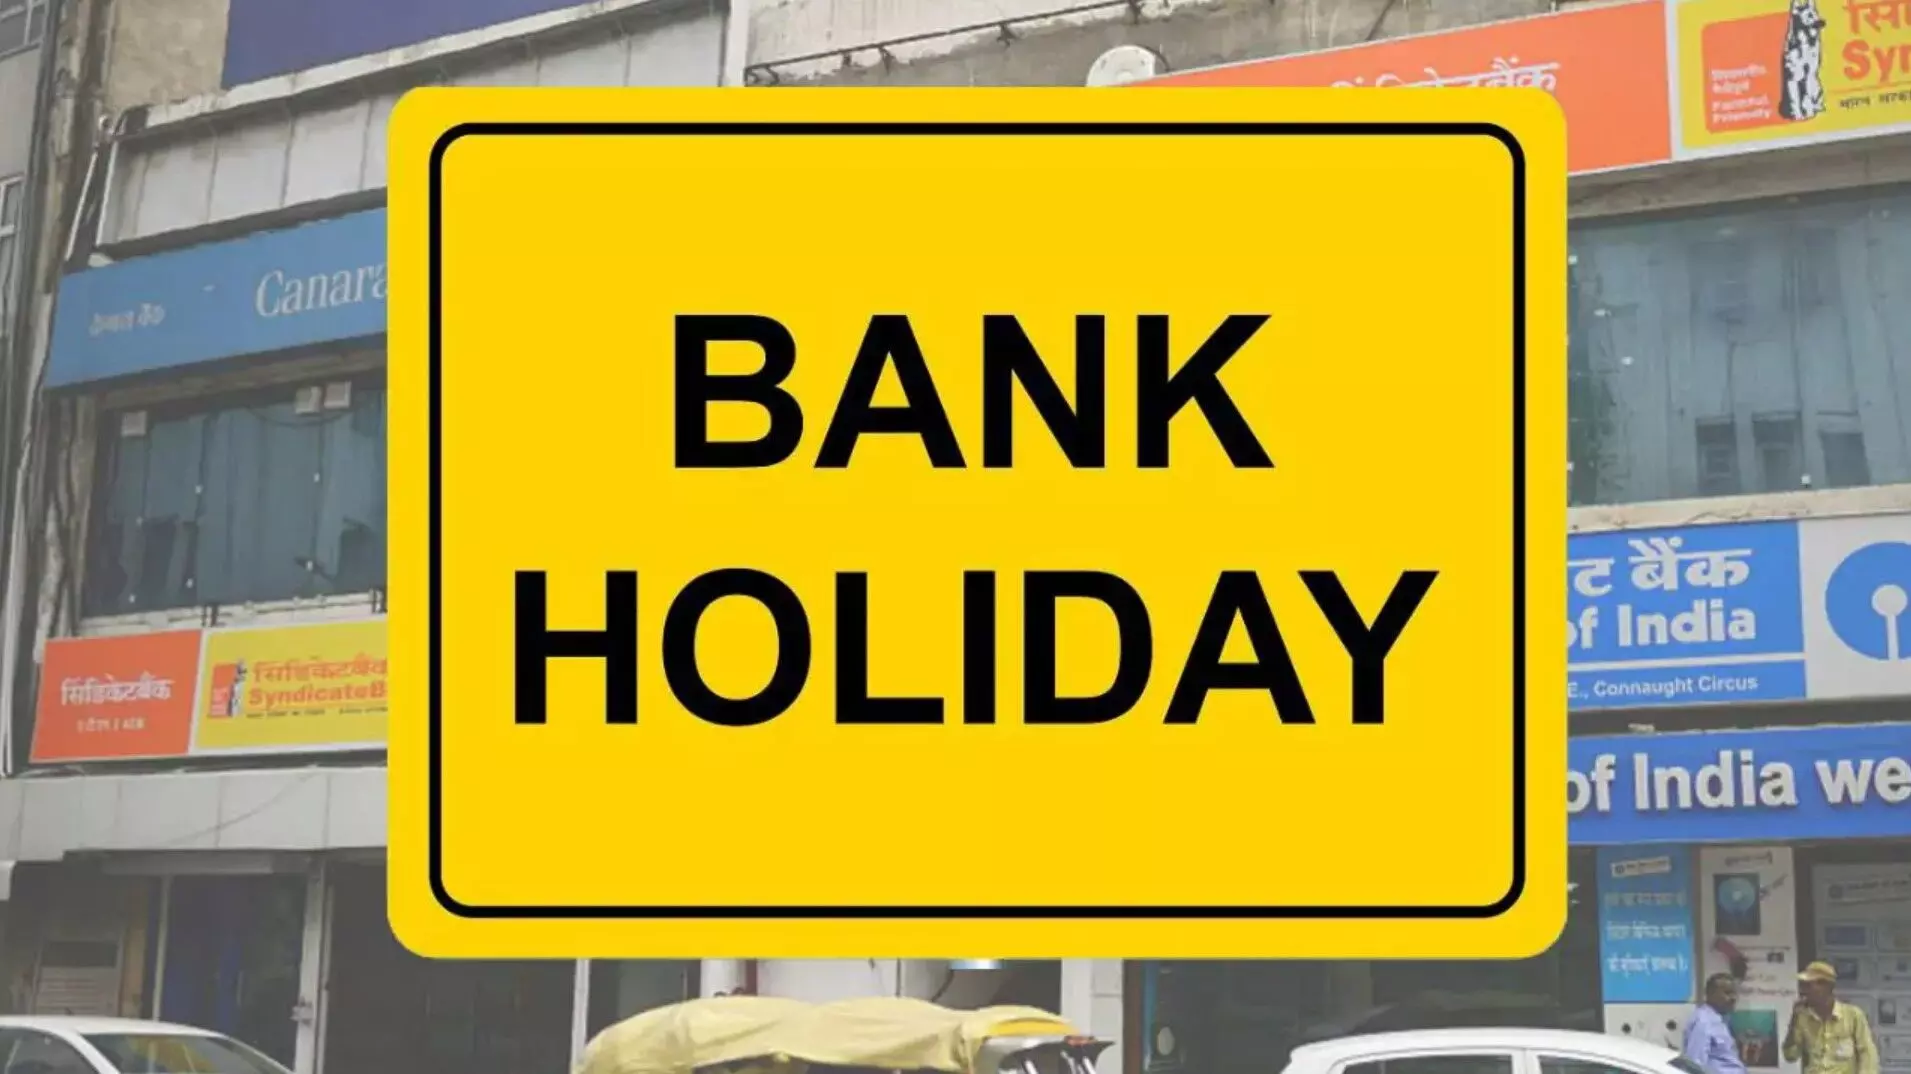 Bank Holiday : आज से लगातार तीन दिन बंद रहेंगे बैंक, देखें मई माह में कब-कब रहेगी छुट्टी